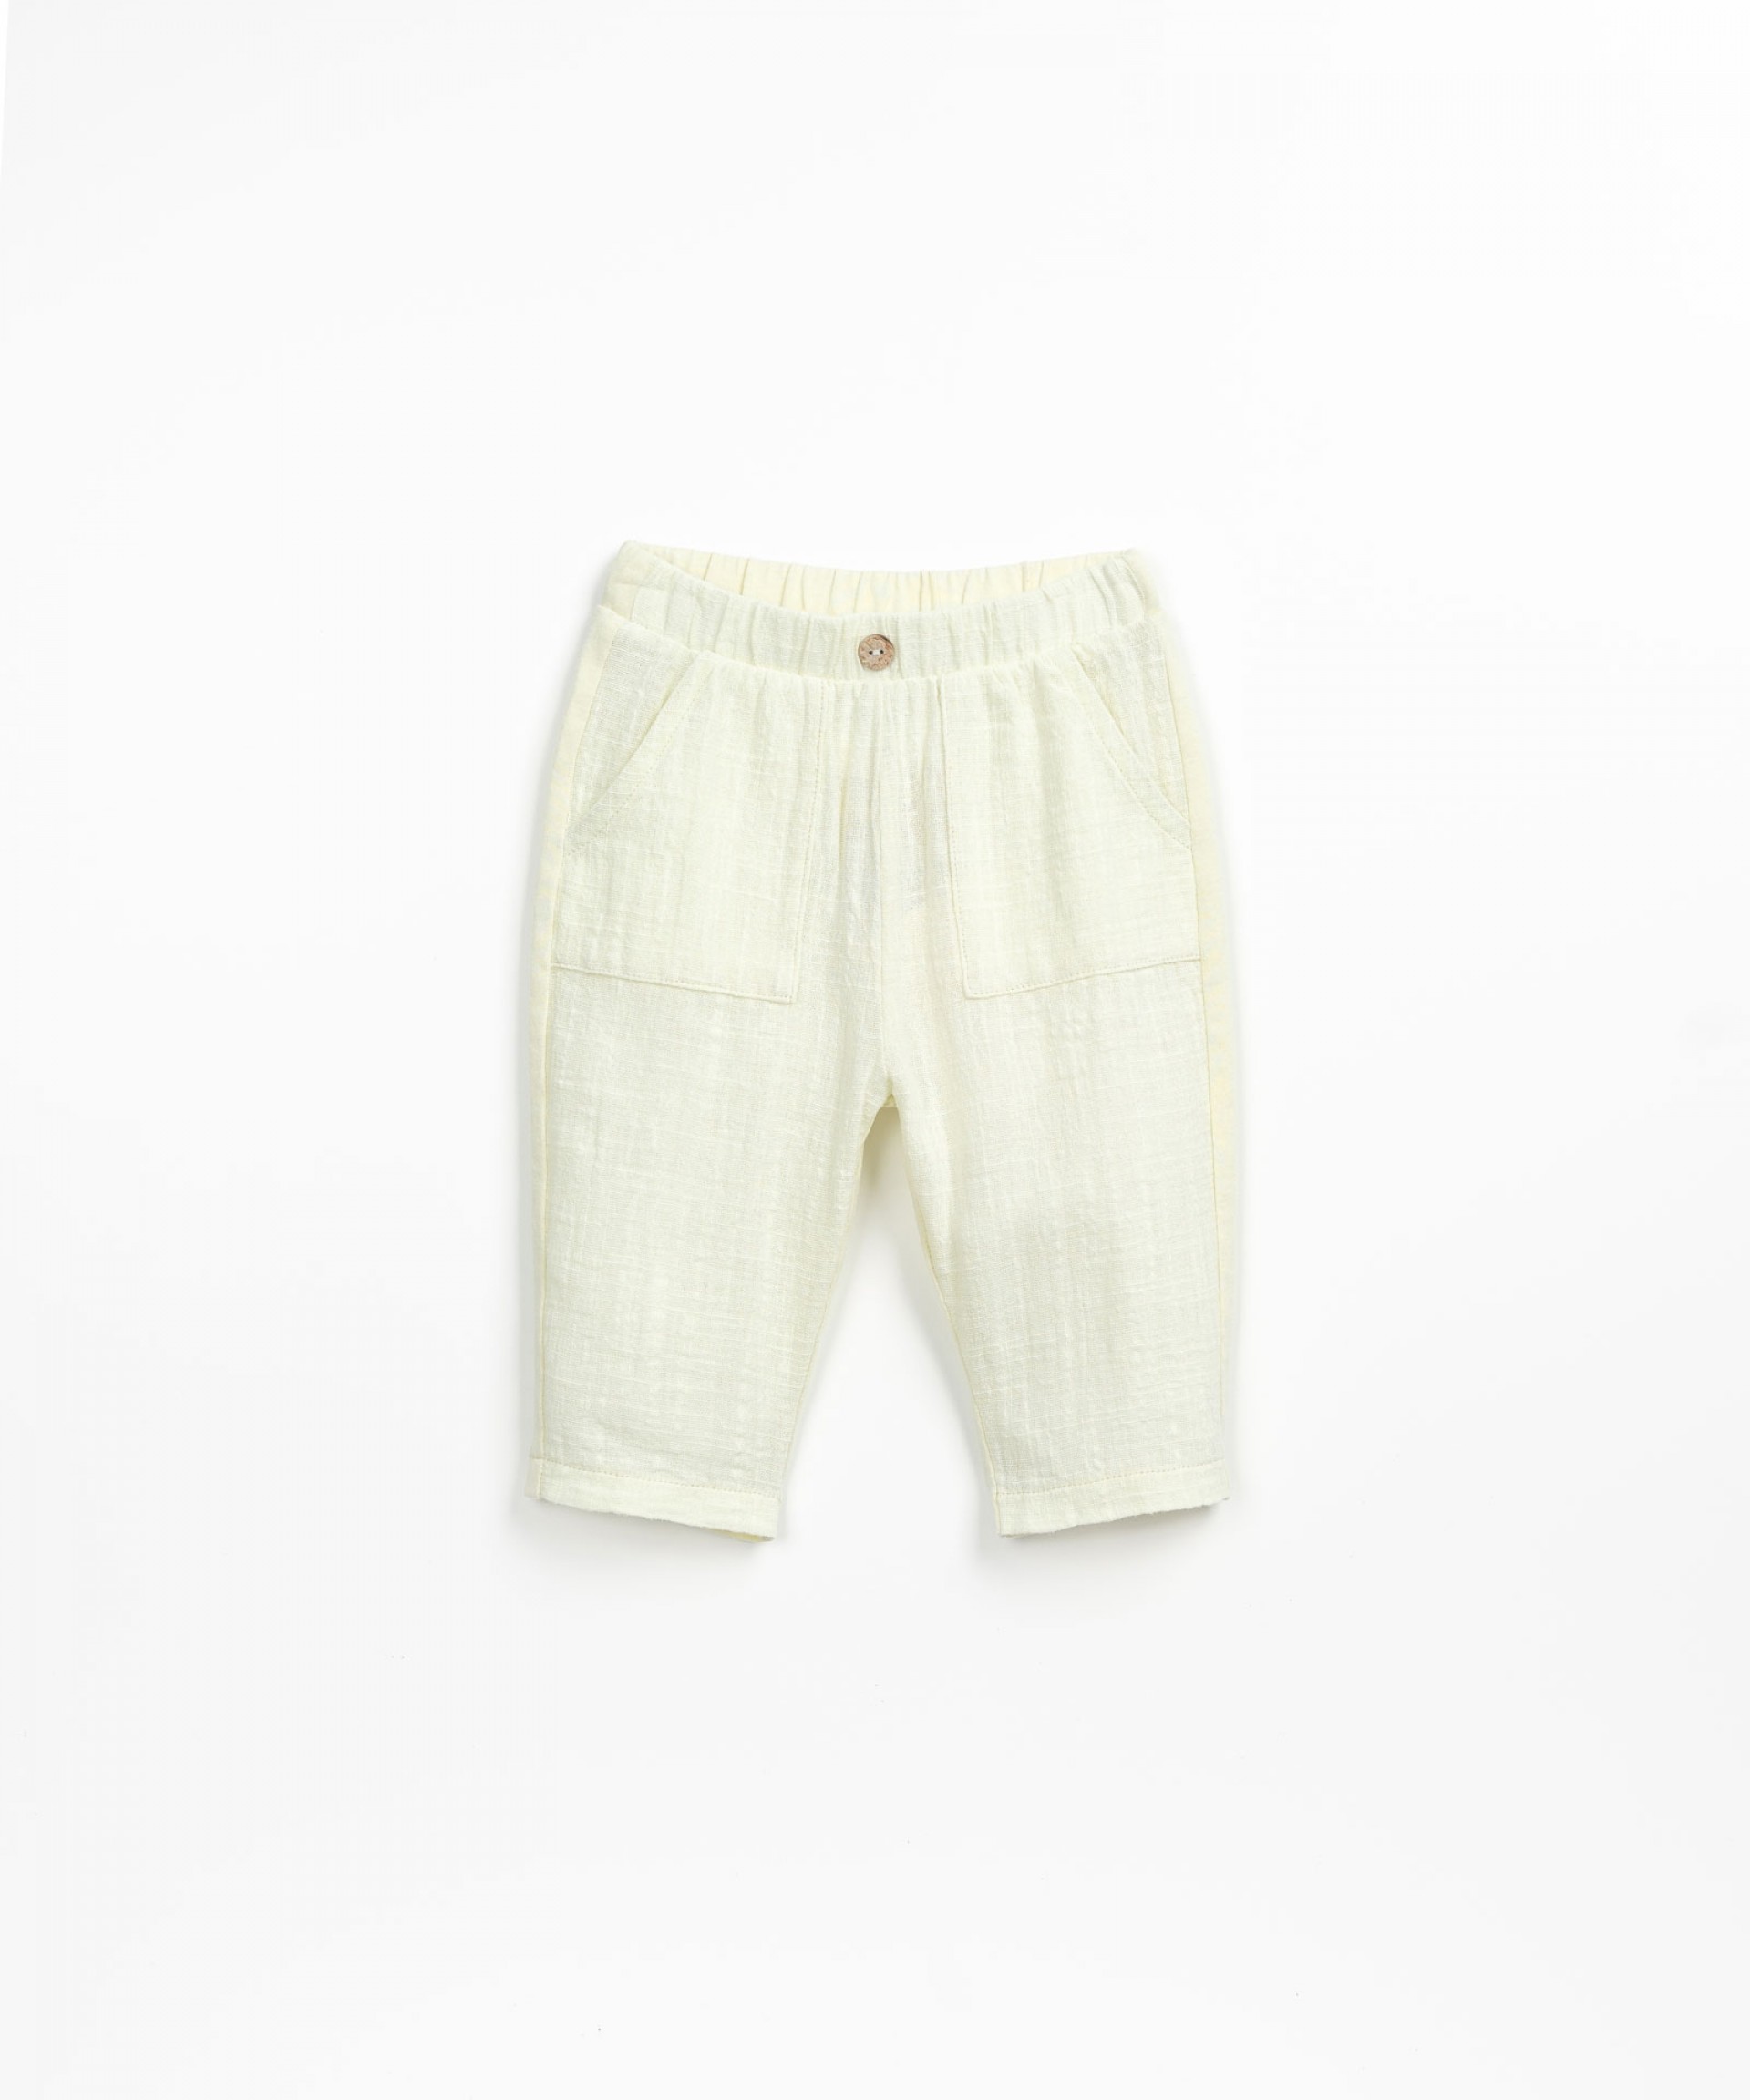 Pantaloni misto cotone biologico e cotone riciclato | Textile Art